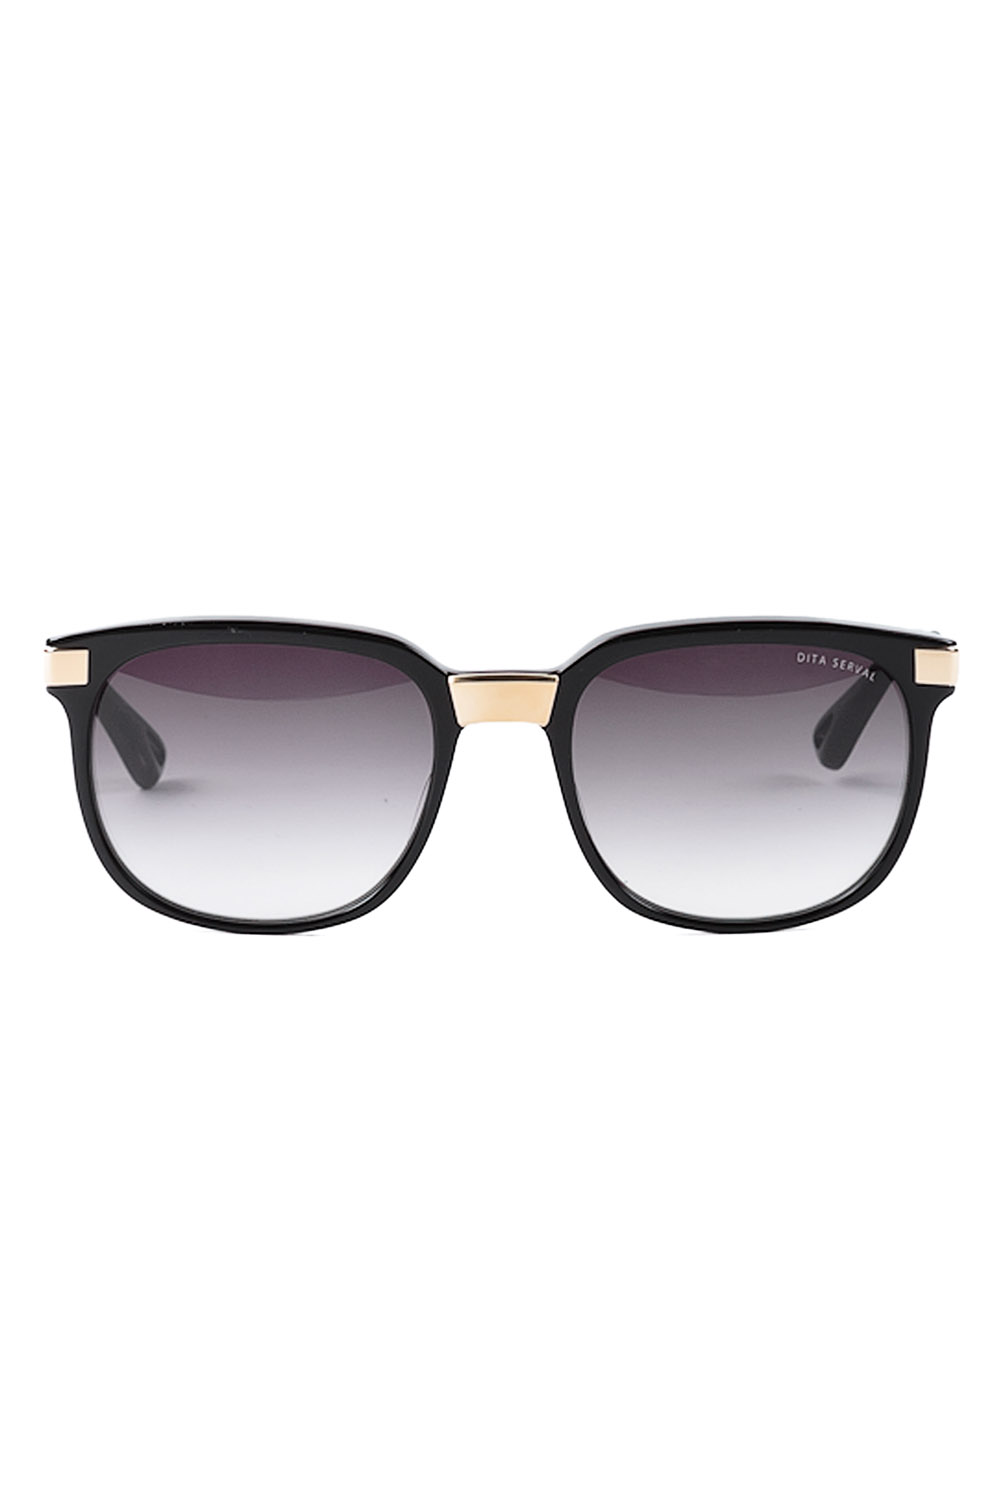 Womens Designer Sunglasses | Womens Tom Ford/Dita Sunglasses for Women